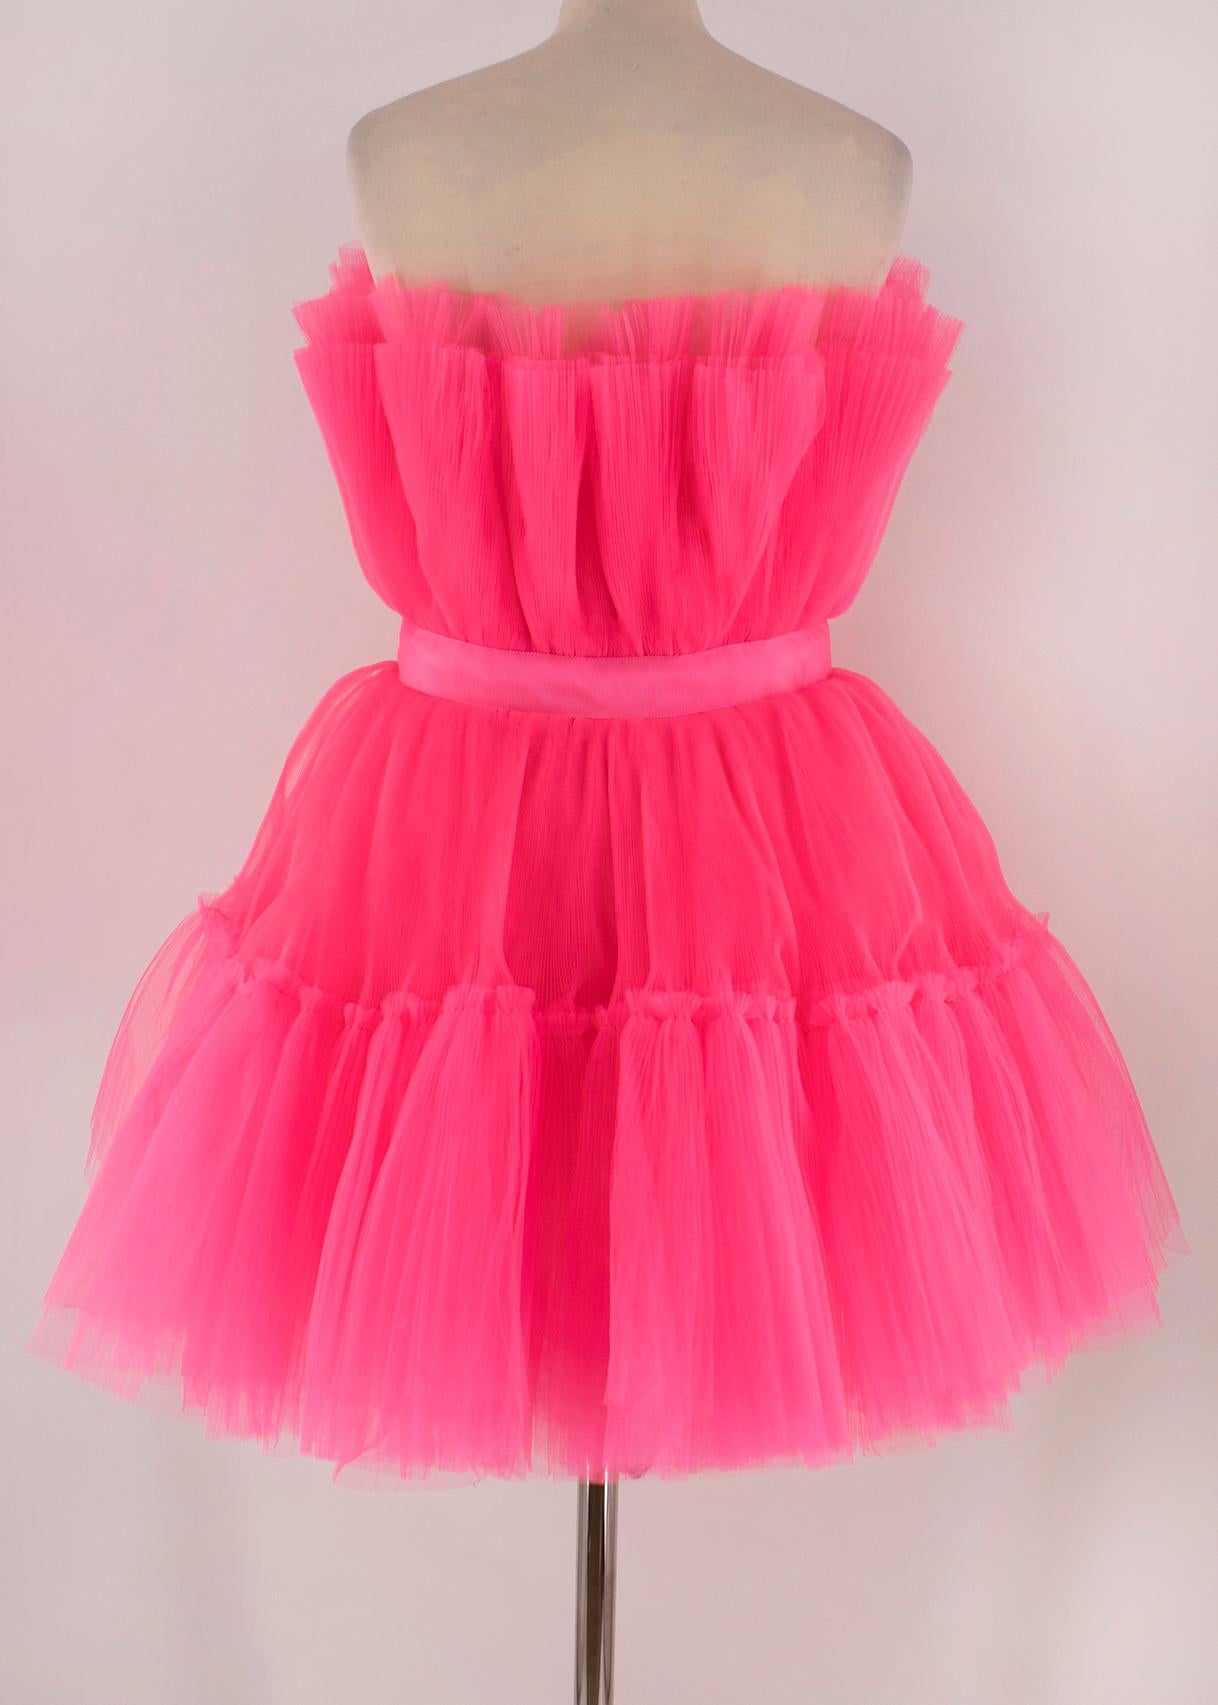 giambattista valli pink tulle dress